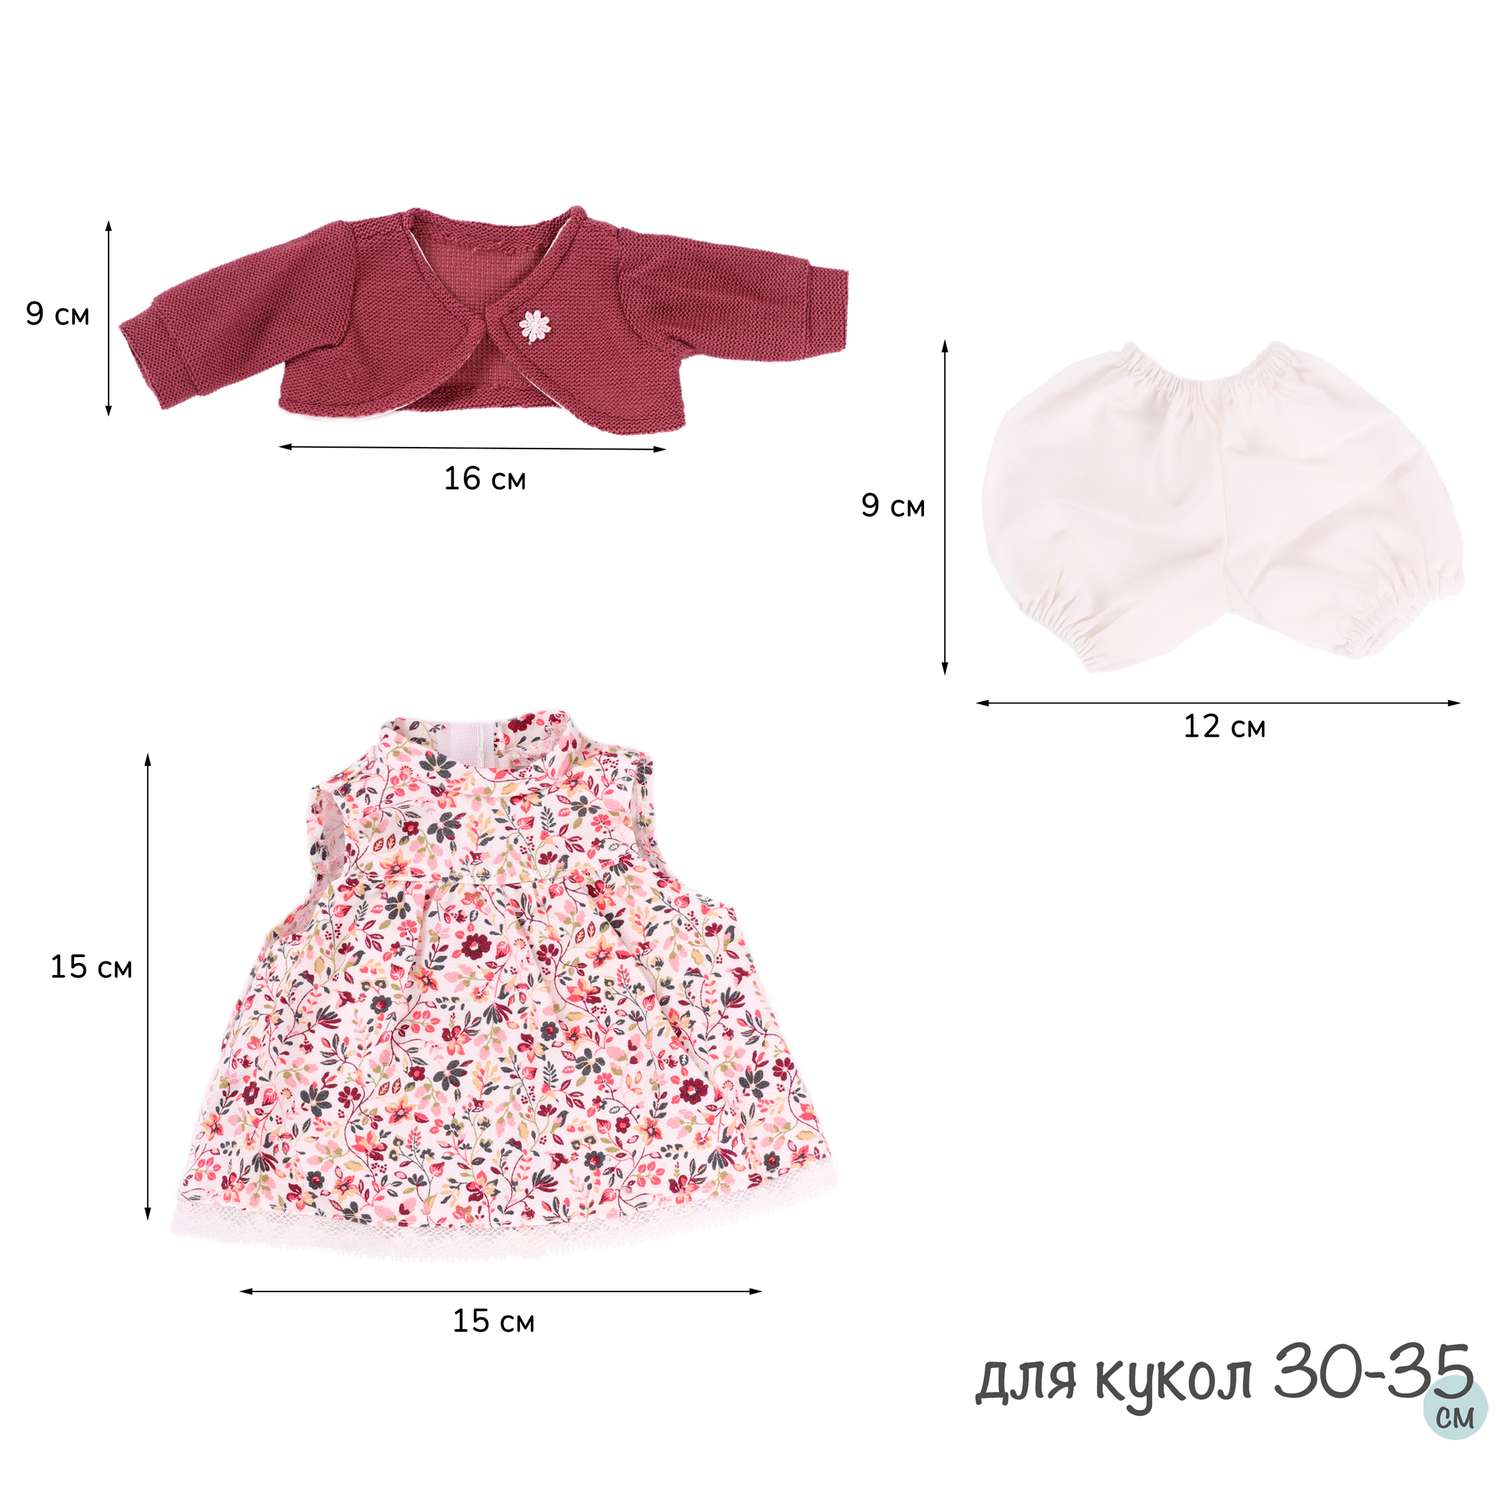 Одежда для кукол и пупсов Antonio Juan 30 - 35 см платье болеро вишневое трусики 91033-19 - фото 9